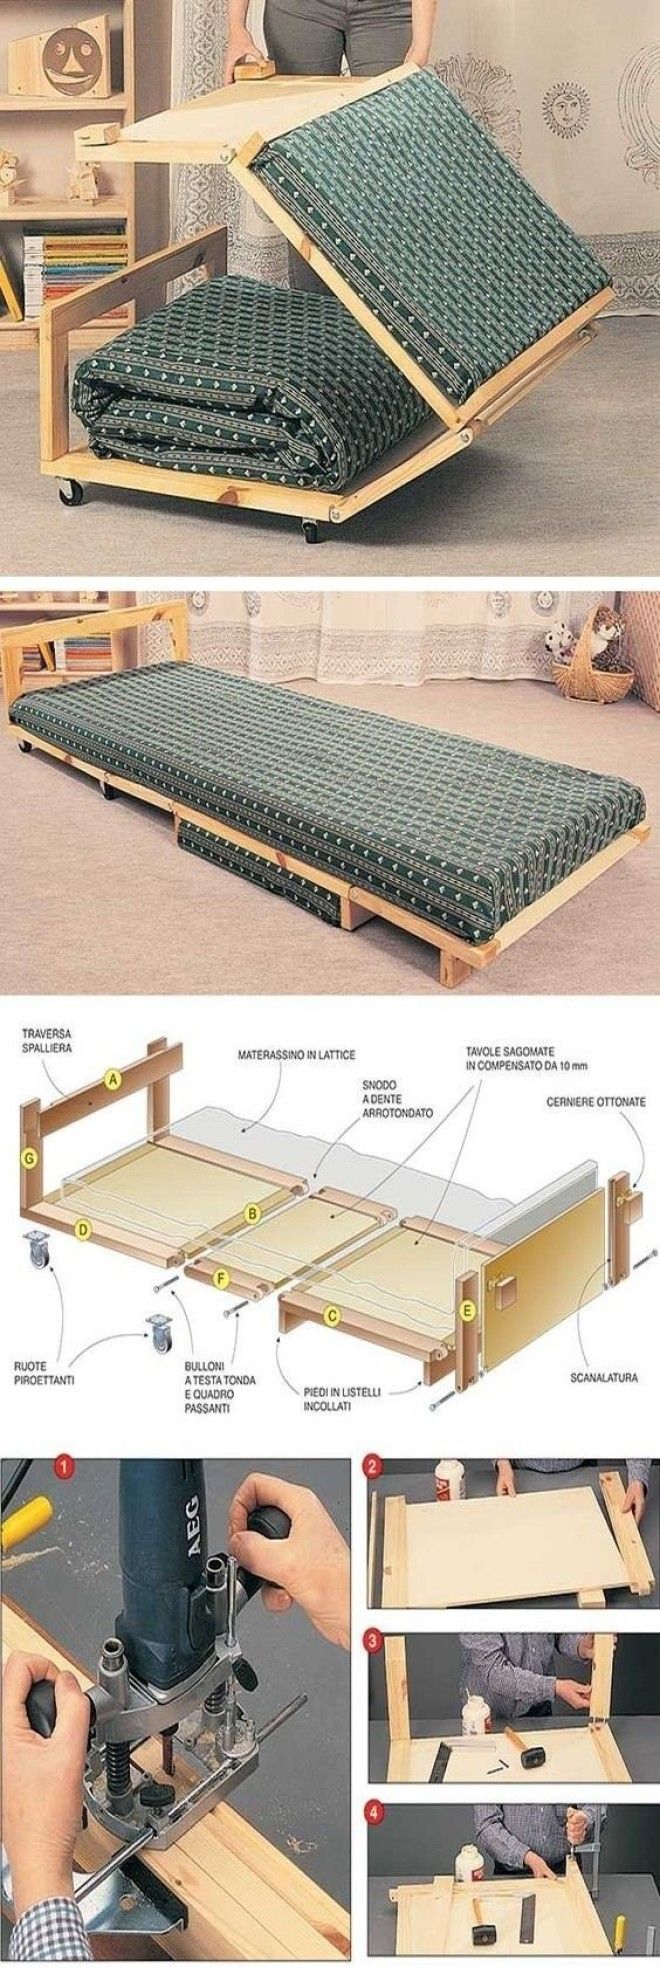 Необычная, но вполне понятная и простая кровать-раскладушка Фабрика идей, интересное, мебель, полезное, трансформеры, эргономичность